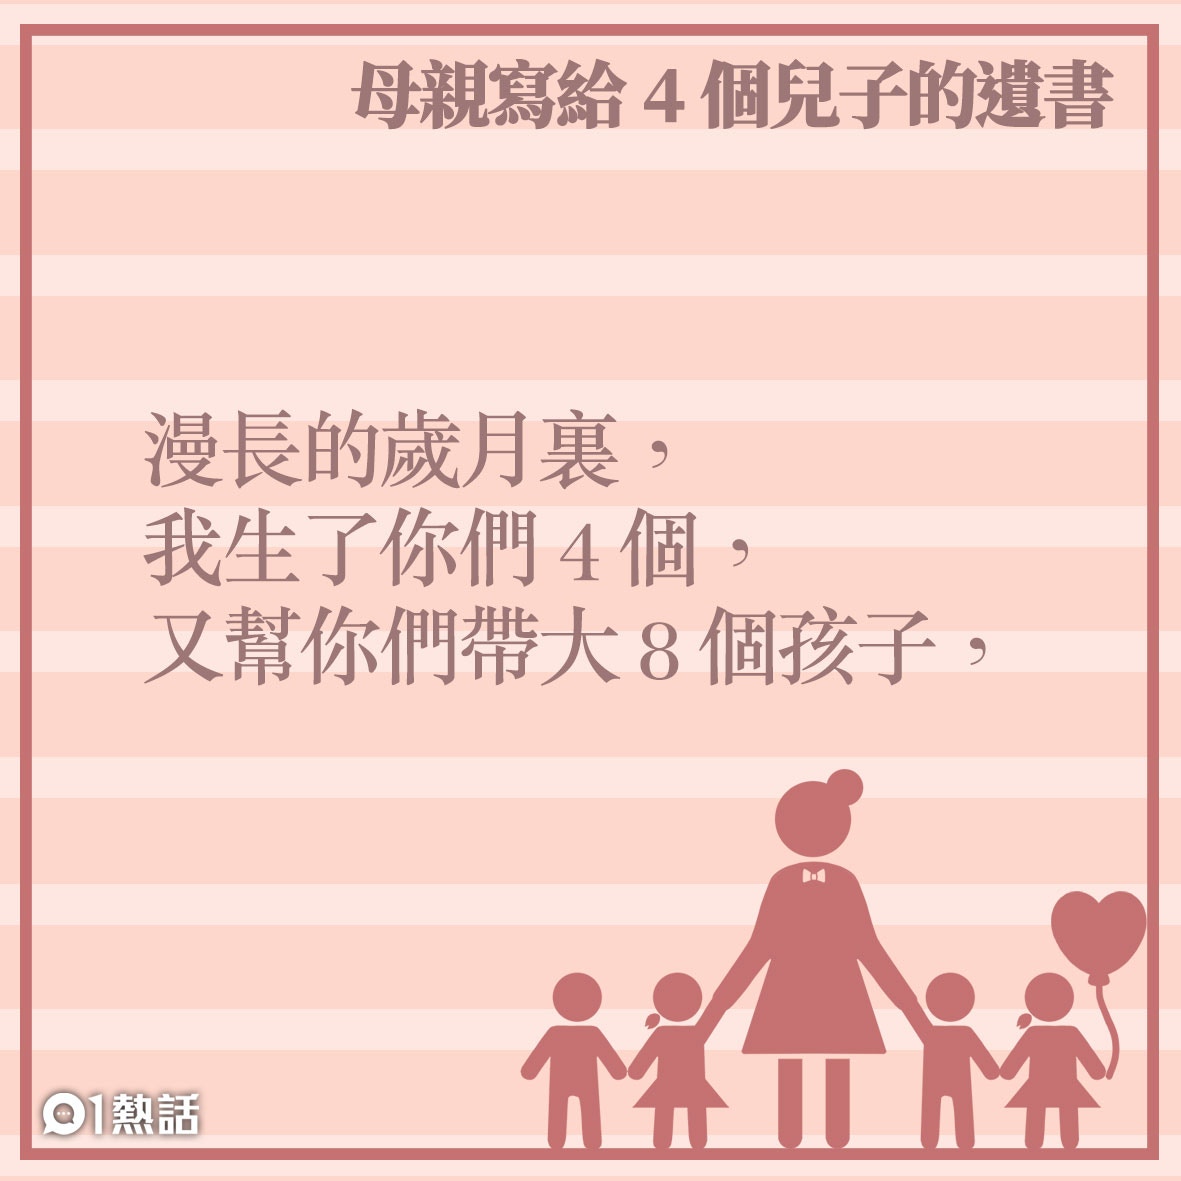 母親節 超警世 80歲媽媽留給4兒的遺書瘋傳 我後悔生下你們 香港01 熱爆話題